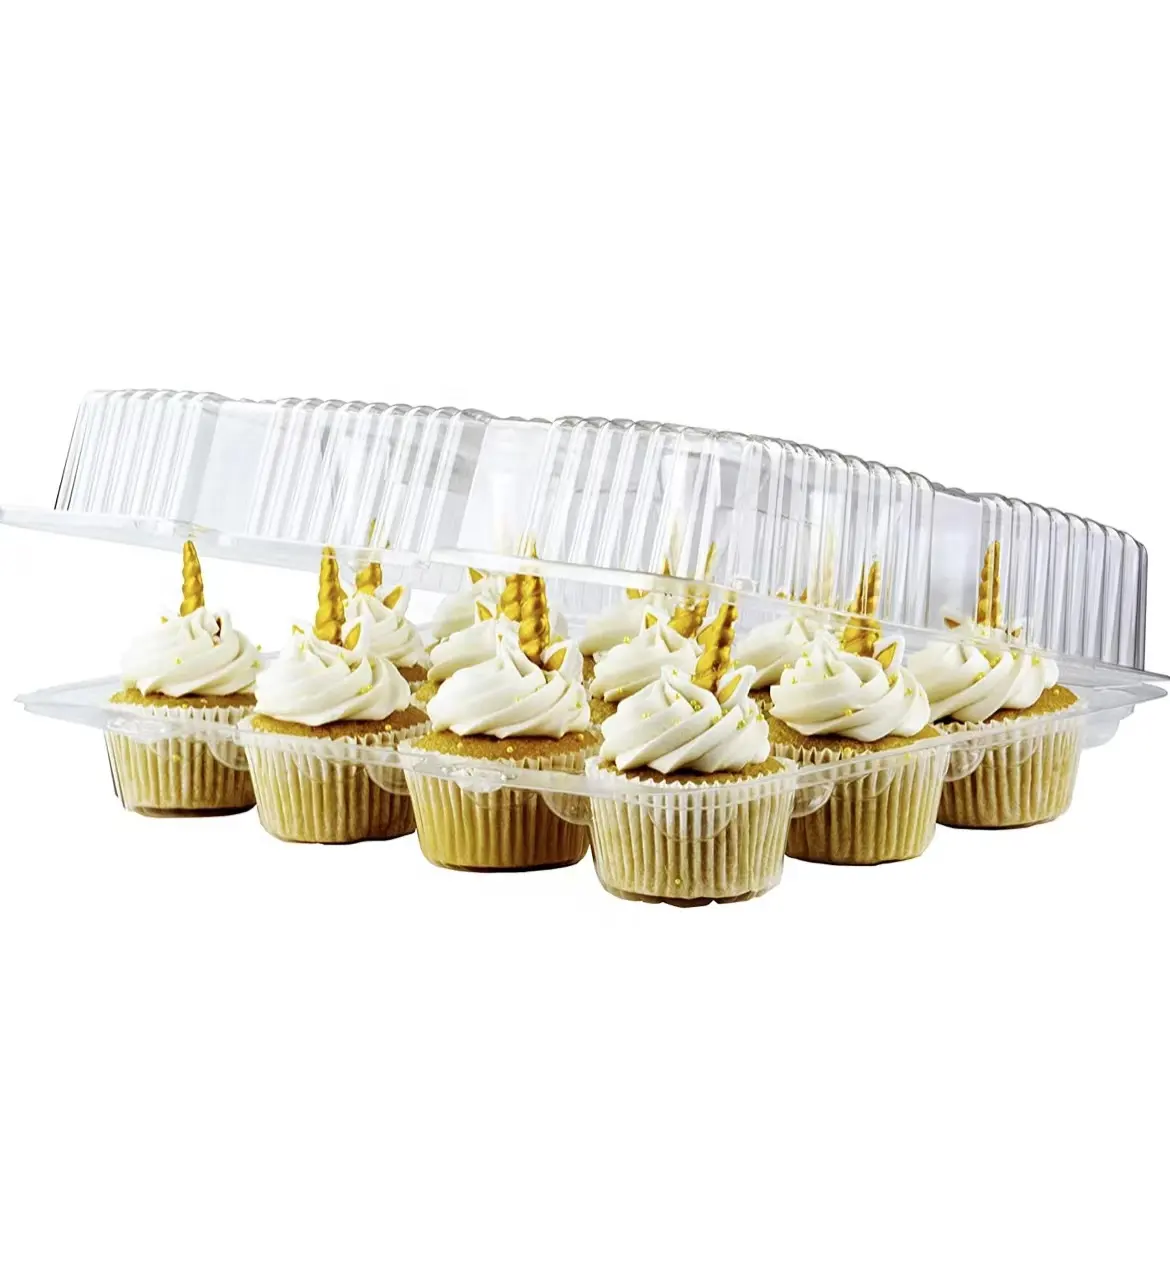 Vente en gros 12 cupcakes jetables en plastique contenants transparents grand dôme cupcake muffins boîtes blister à clapet porte-cupcakes